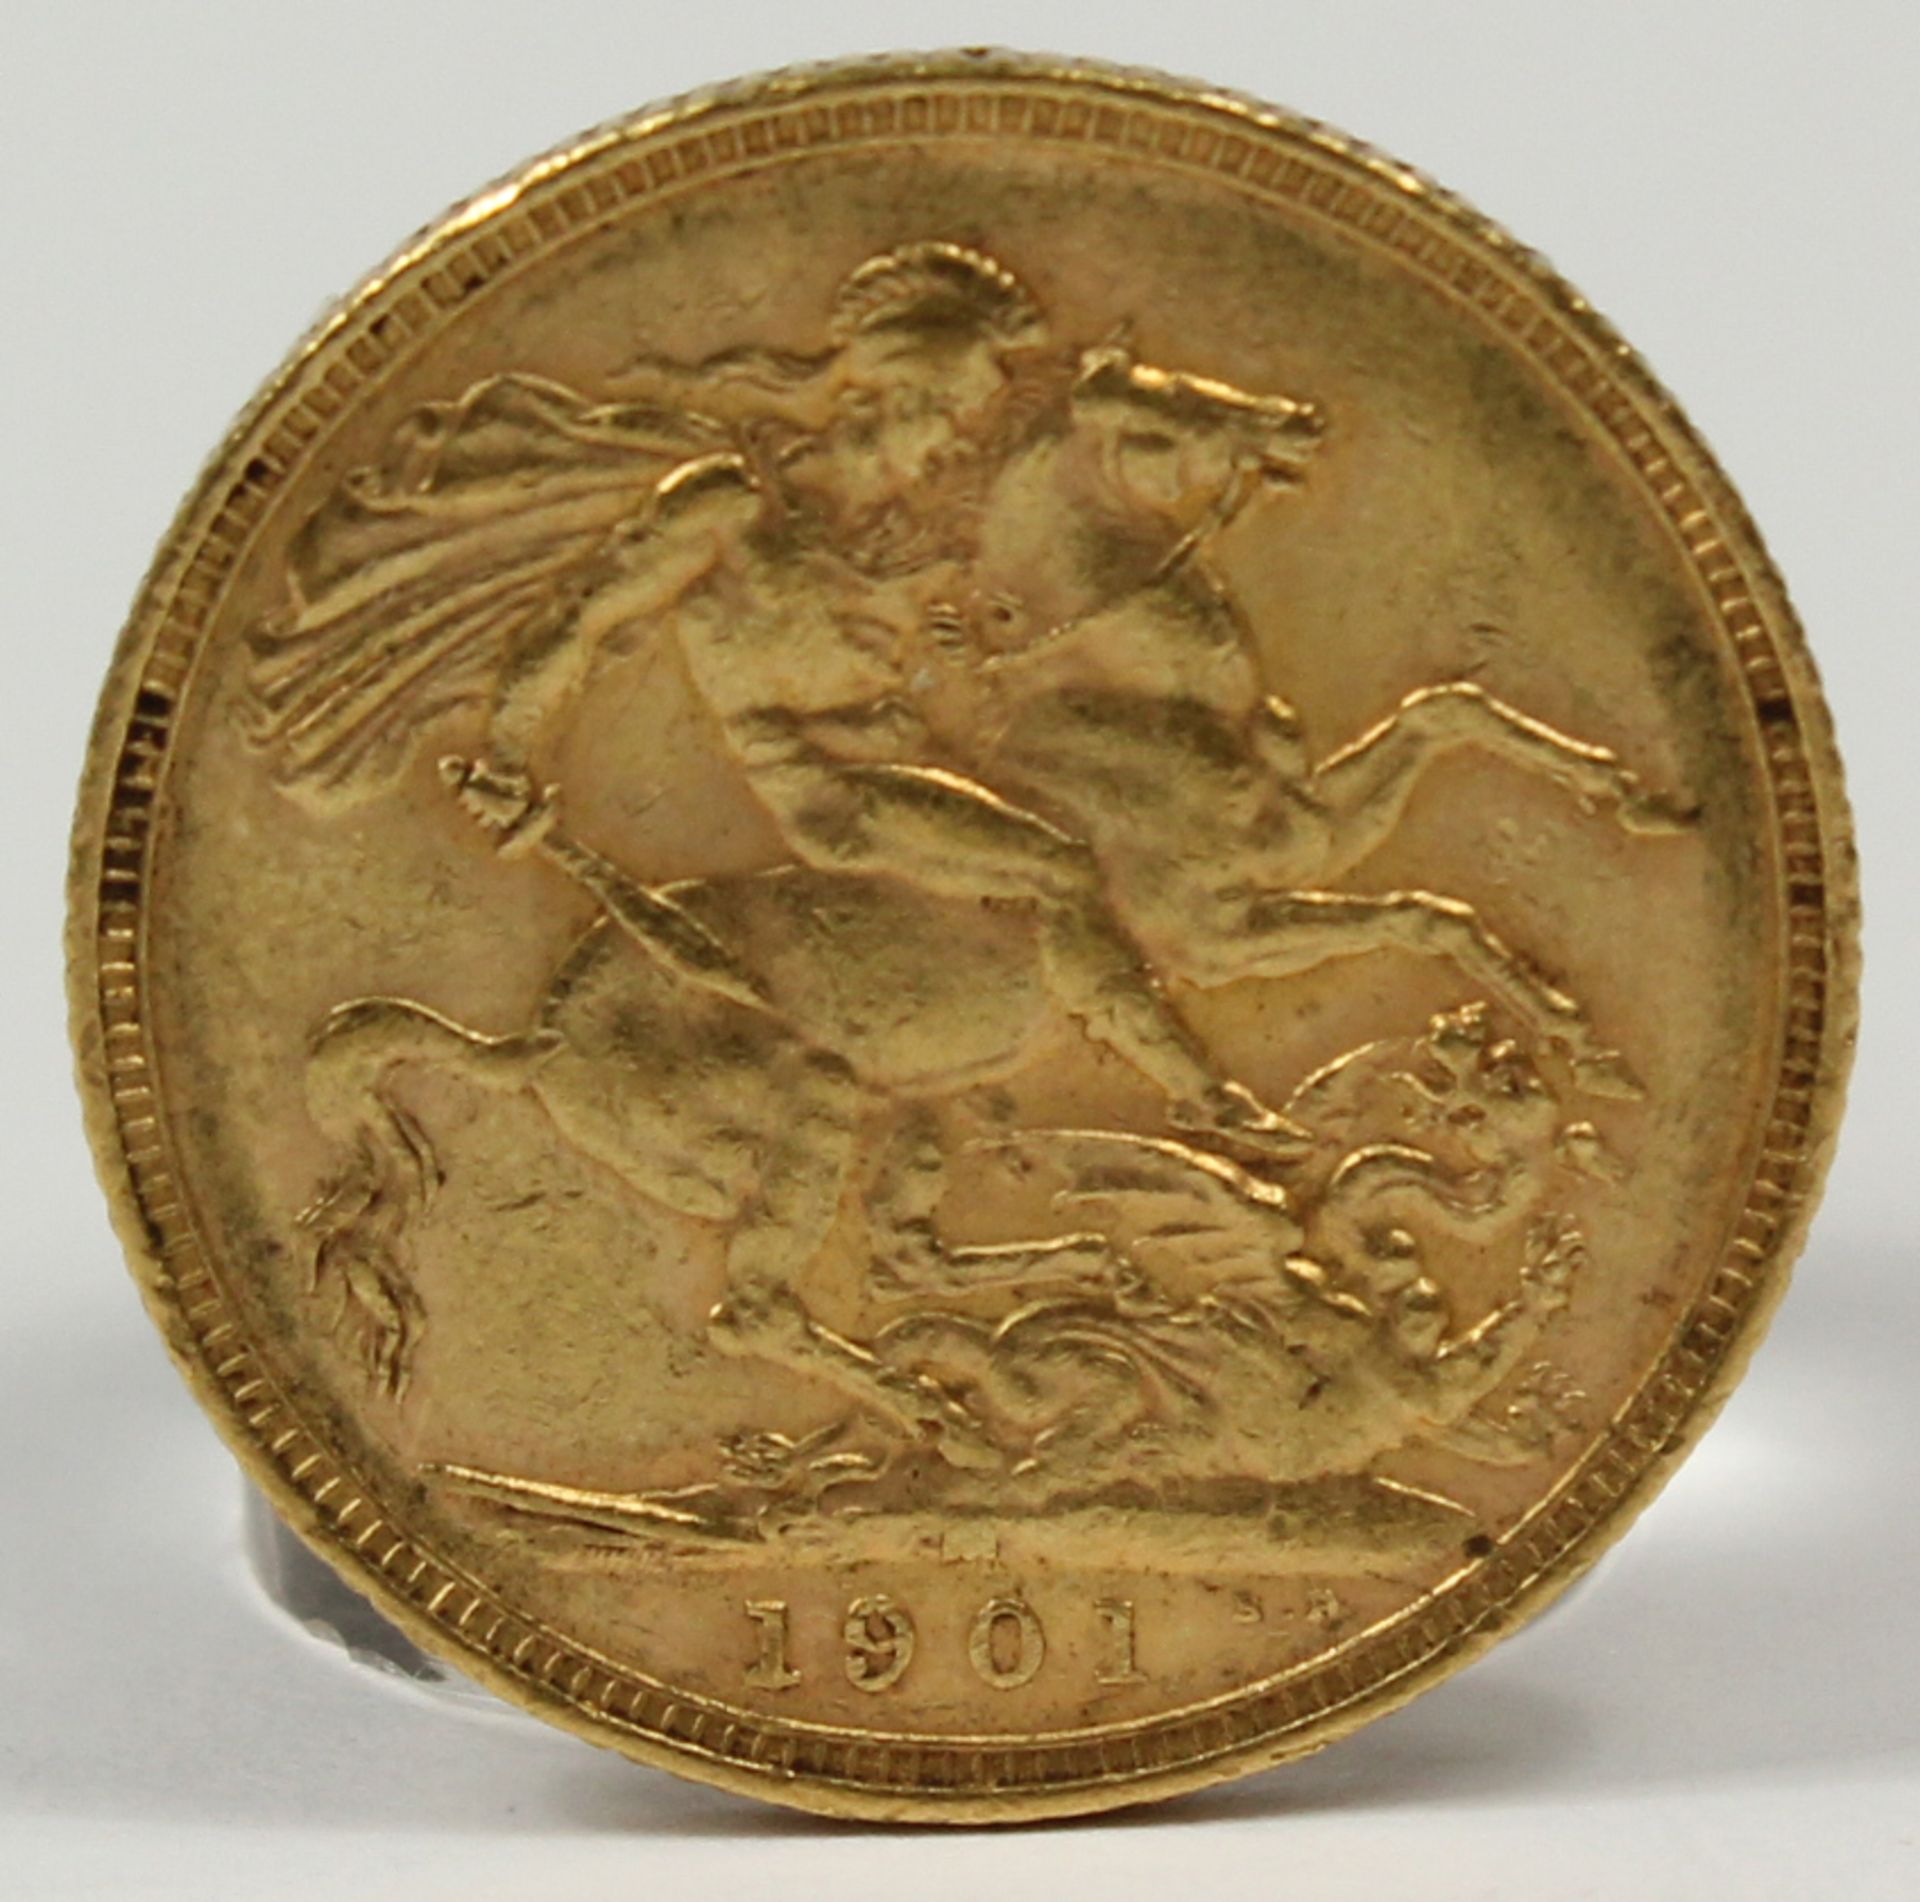 Goldmünze. 1 Sovereign. Großbritannien. Victoria. 1901. - Bild 2 aus 4